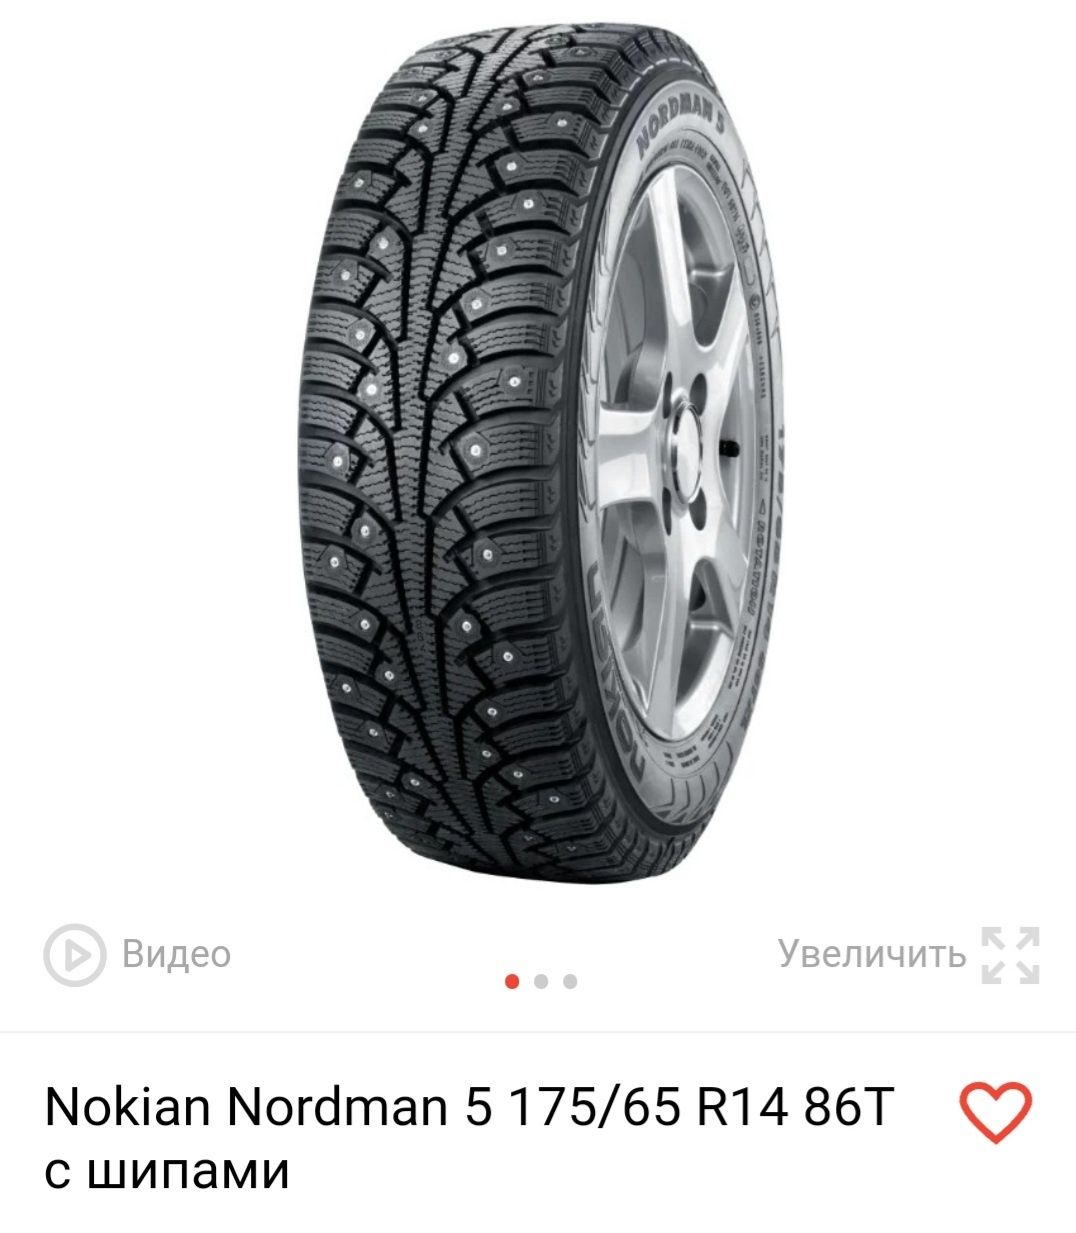 Новая зимняя резина Nokian Nordman 5